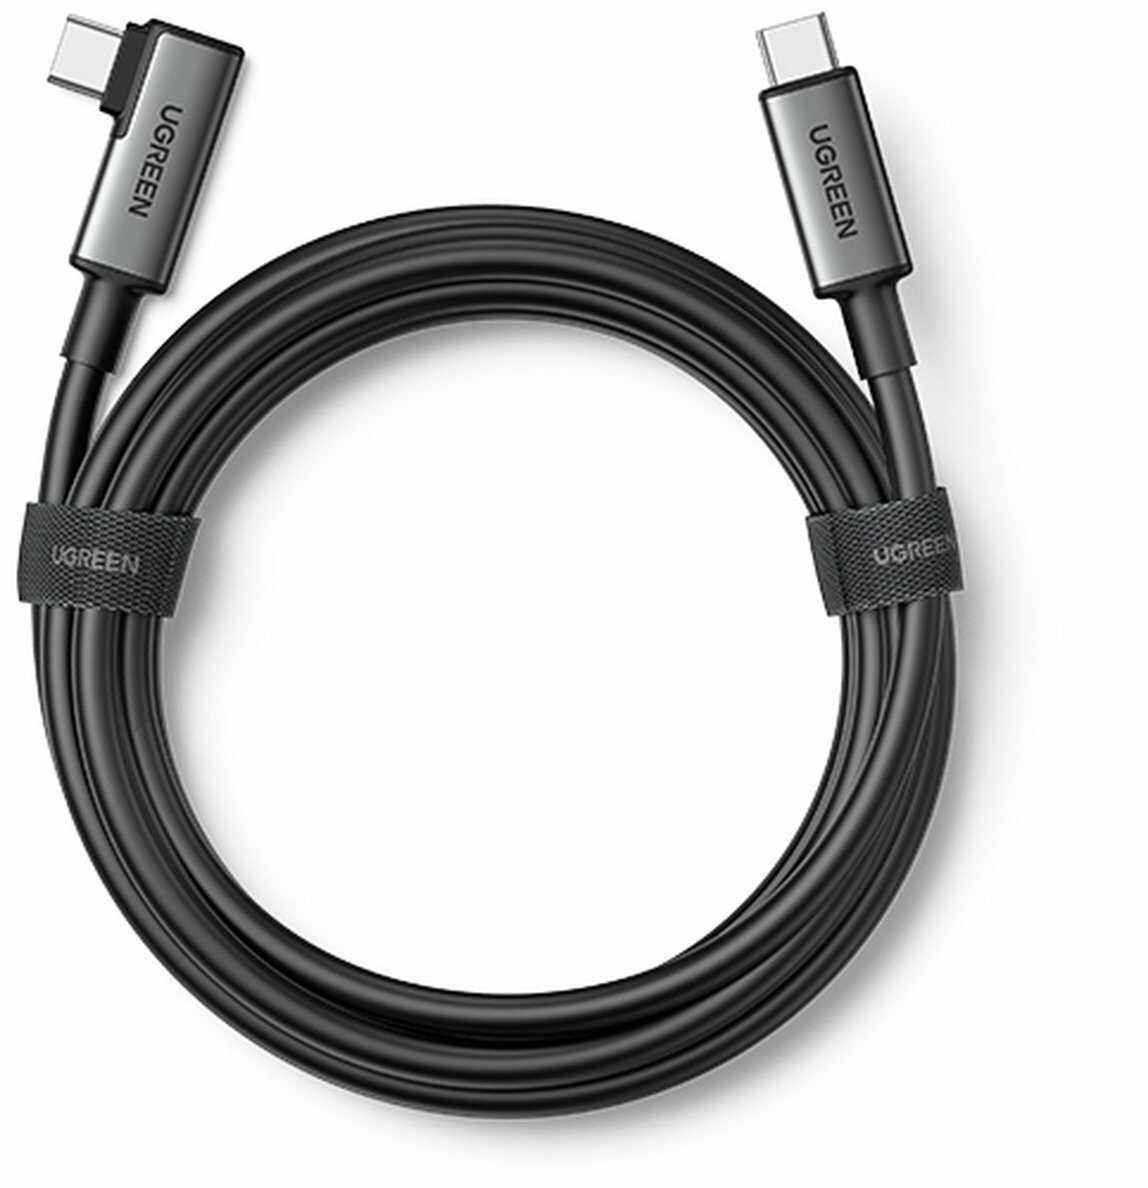 Ugreen kabel kątowy USB Typ C - USB Typ C do ładowania 60W / transmisji danych z obsługą gogli VR np. Oculus Quest 2 5m czarny US551